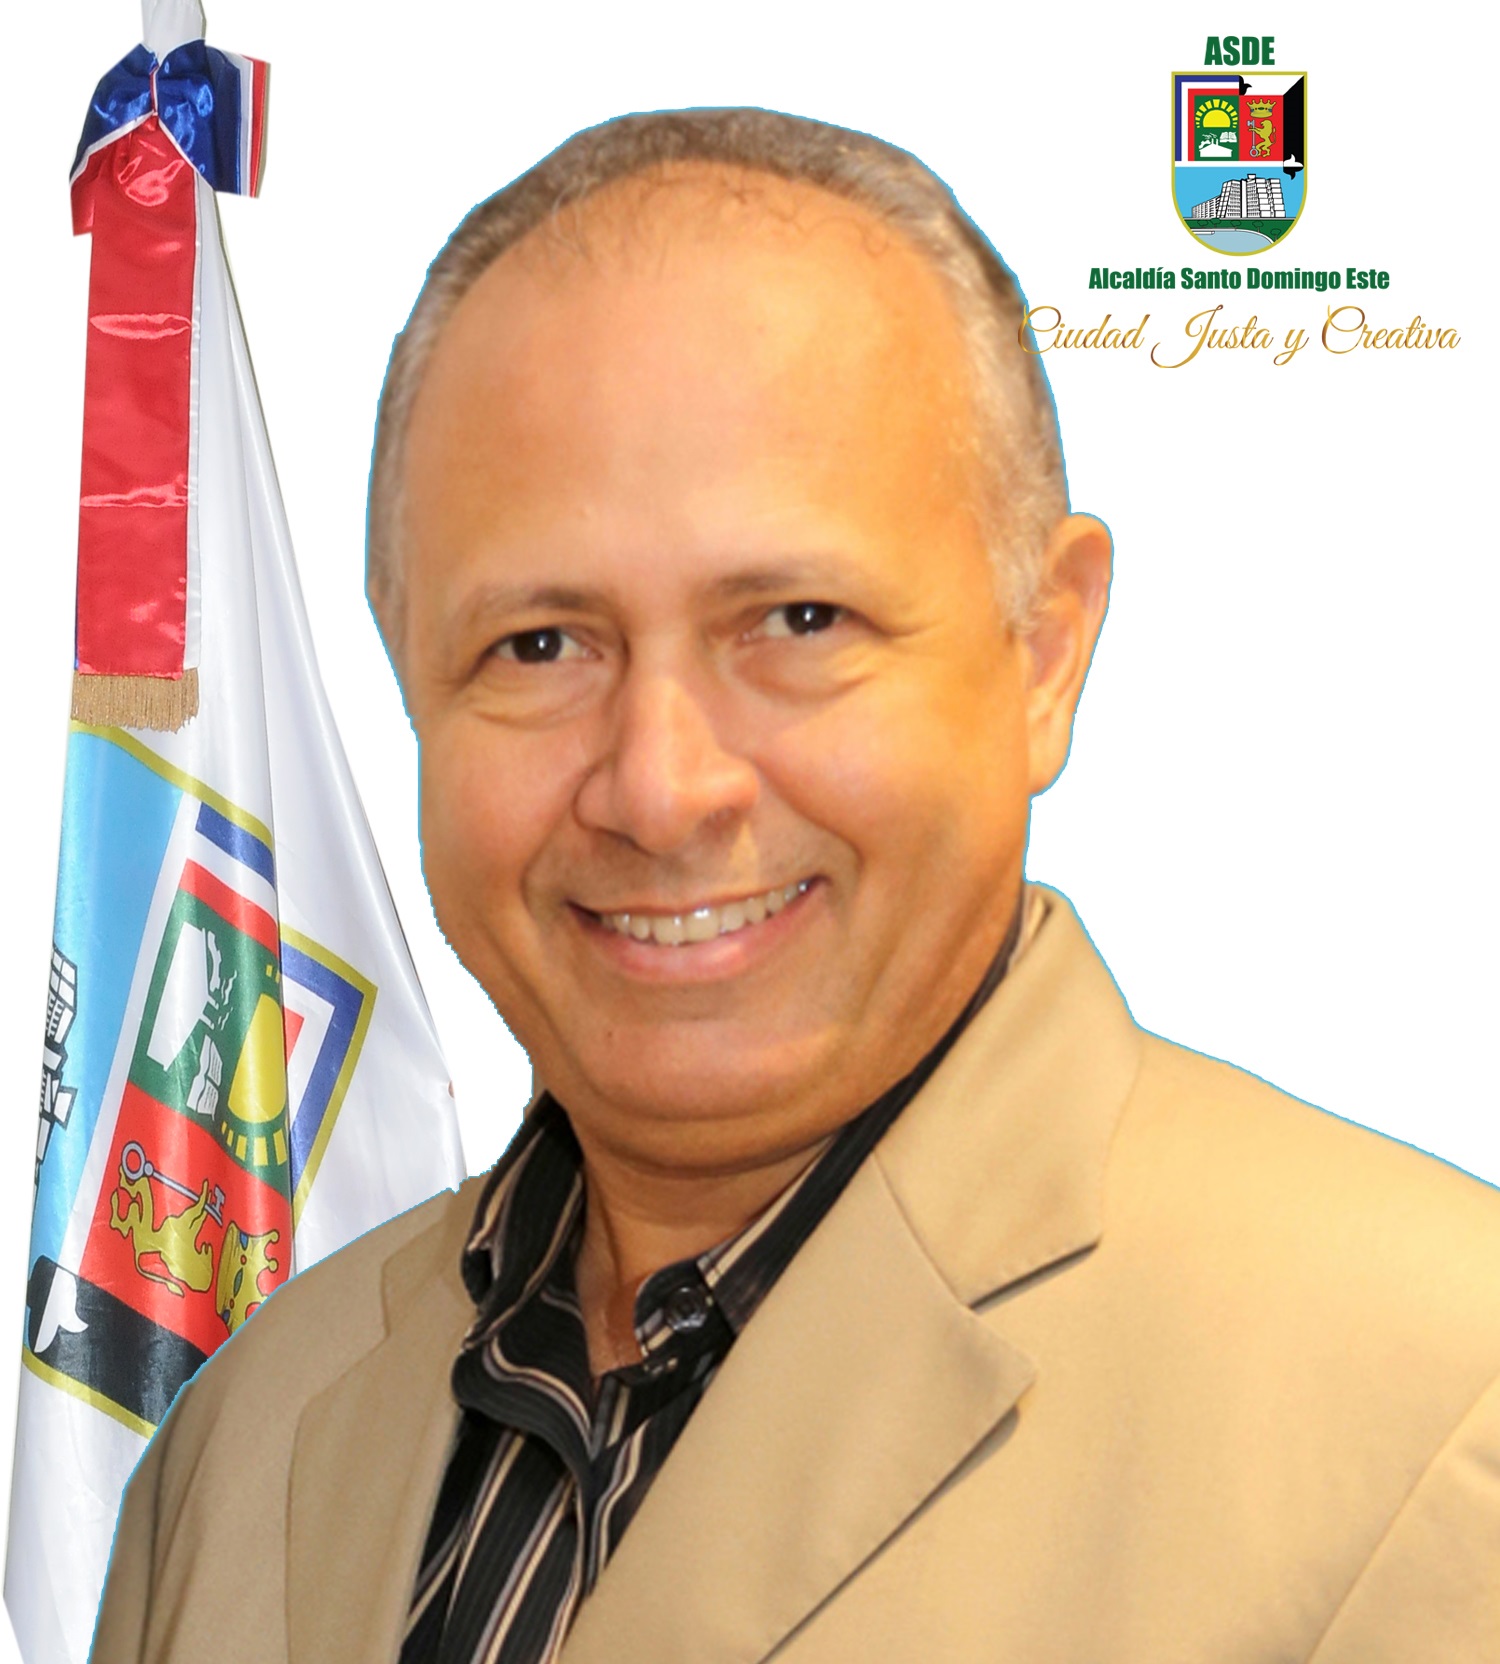 Robert Arias